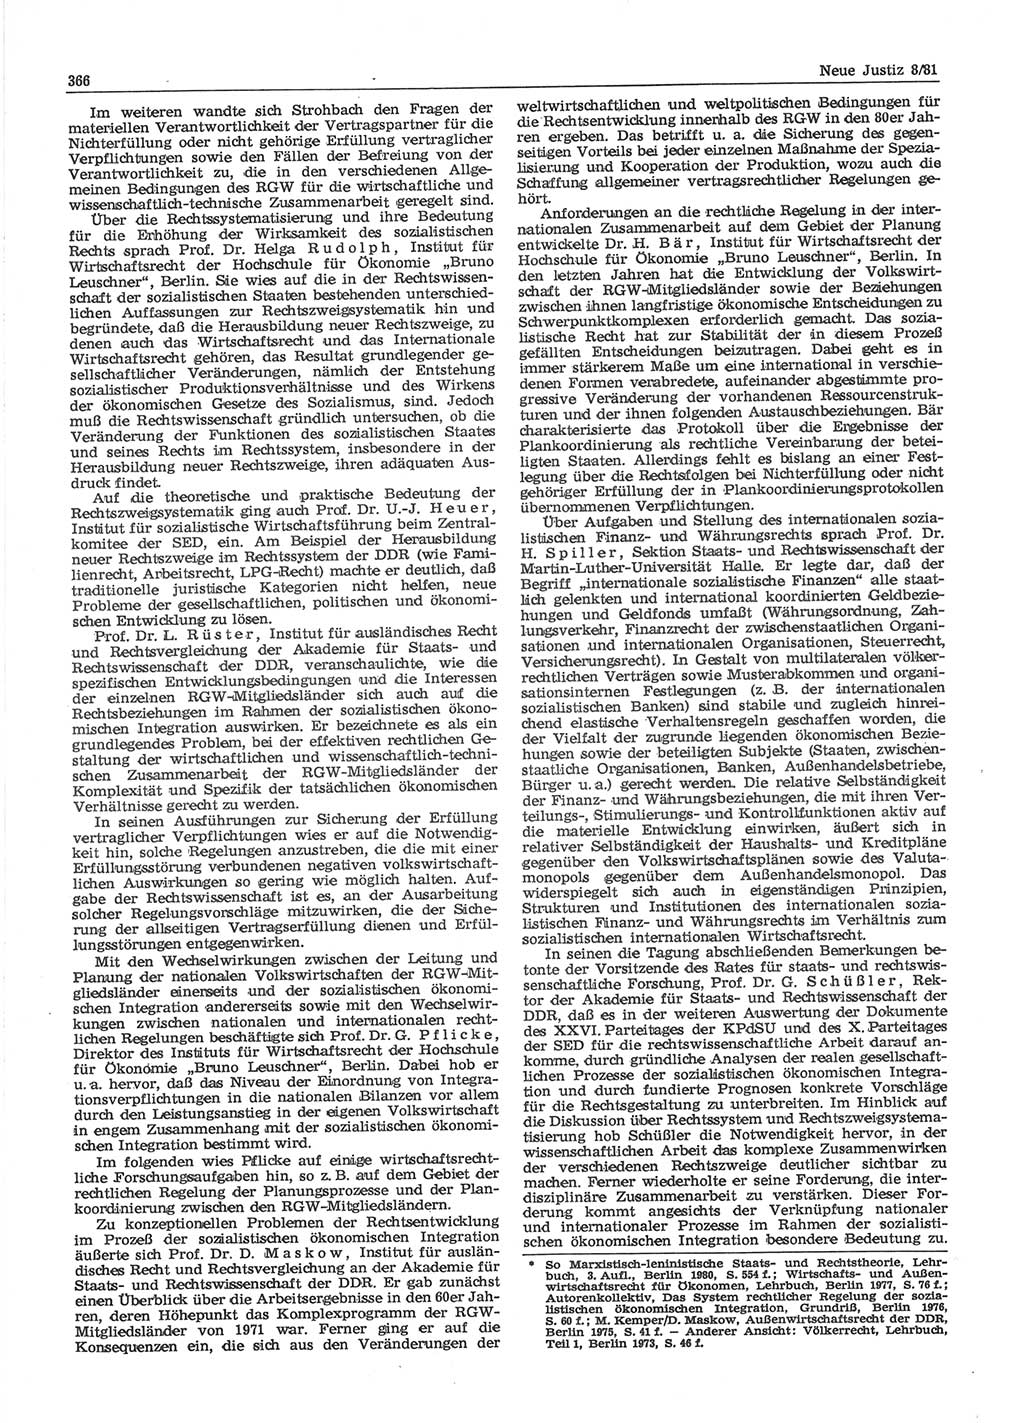 Neue Justiz (NJ), Zeitschrift für sozialistisches Recht und Gesetzlichkeit [Deutsche Demokratische Republik (DDR)], 35. Jahrgang 1981, Seite 366 (NJ DDR 1981, S. 366)